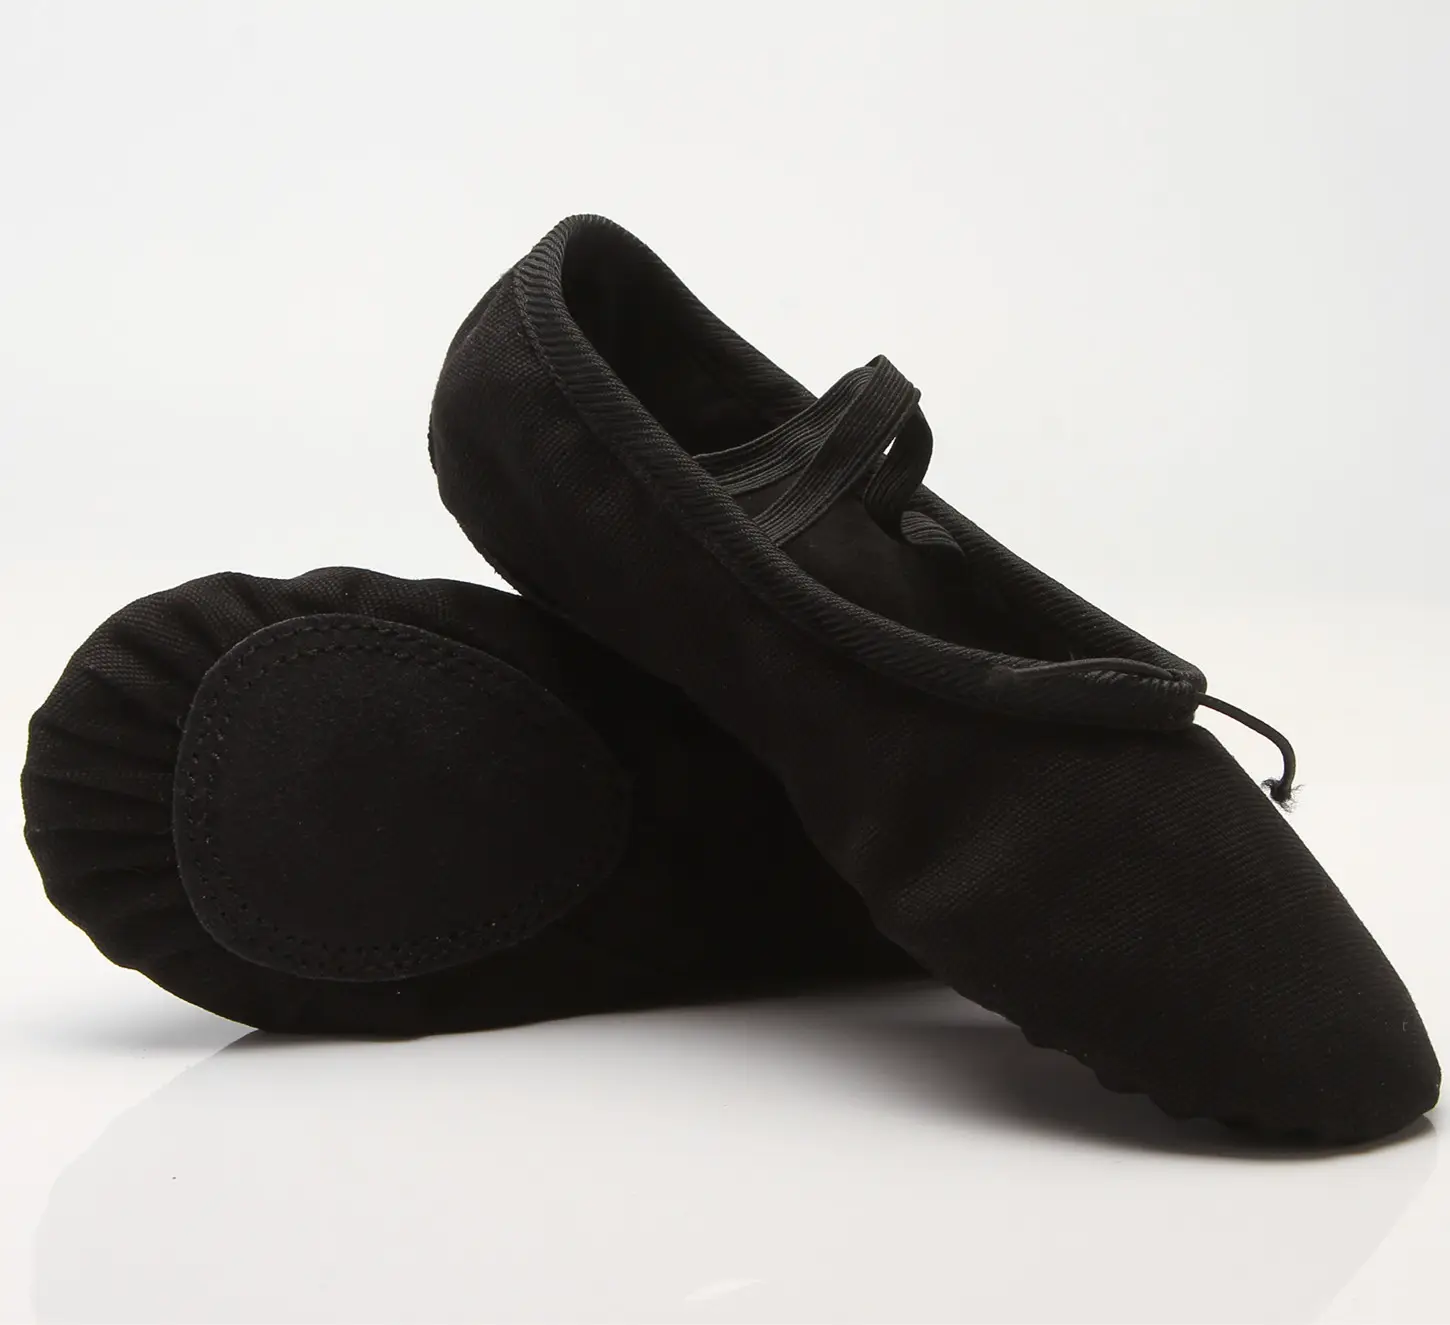 चीन थोक नृत्य जूते, लचीला बैले जूते बिक्री के लिए है।